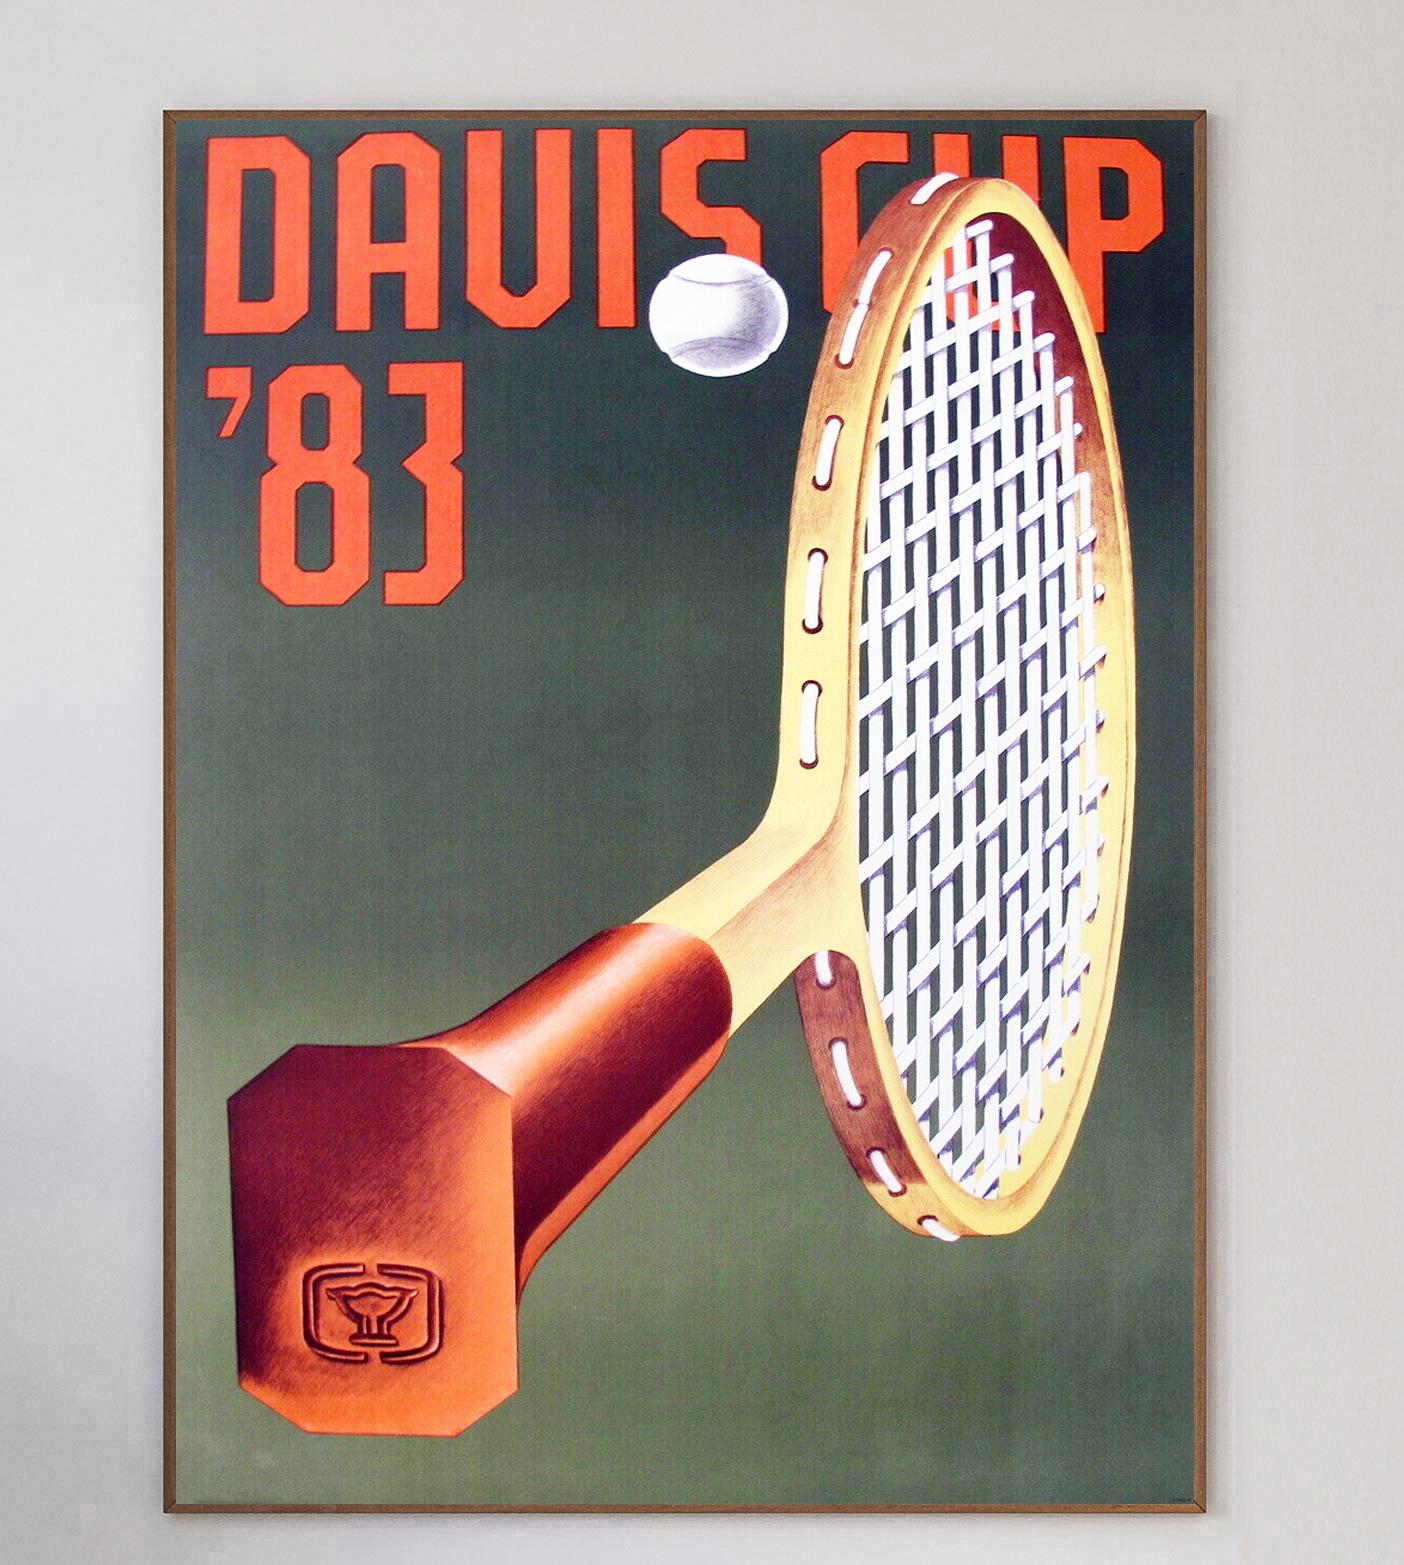 Créée en 1900, la Coupe Davis, considérée comme la 